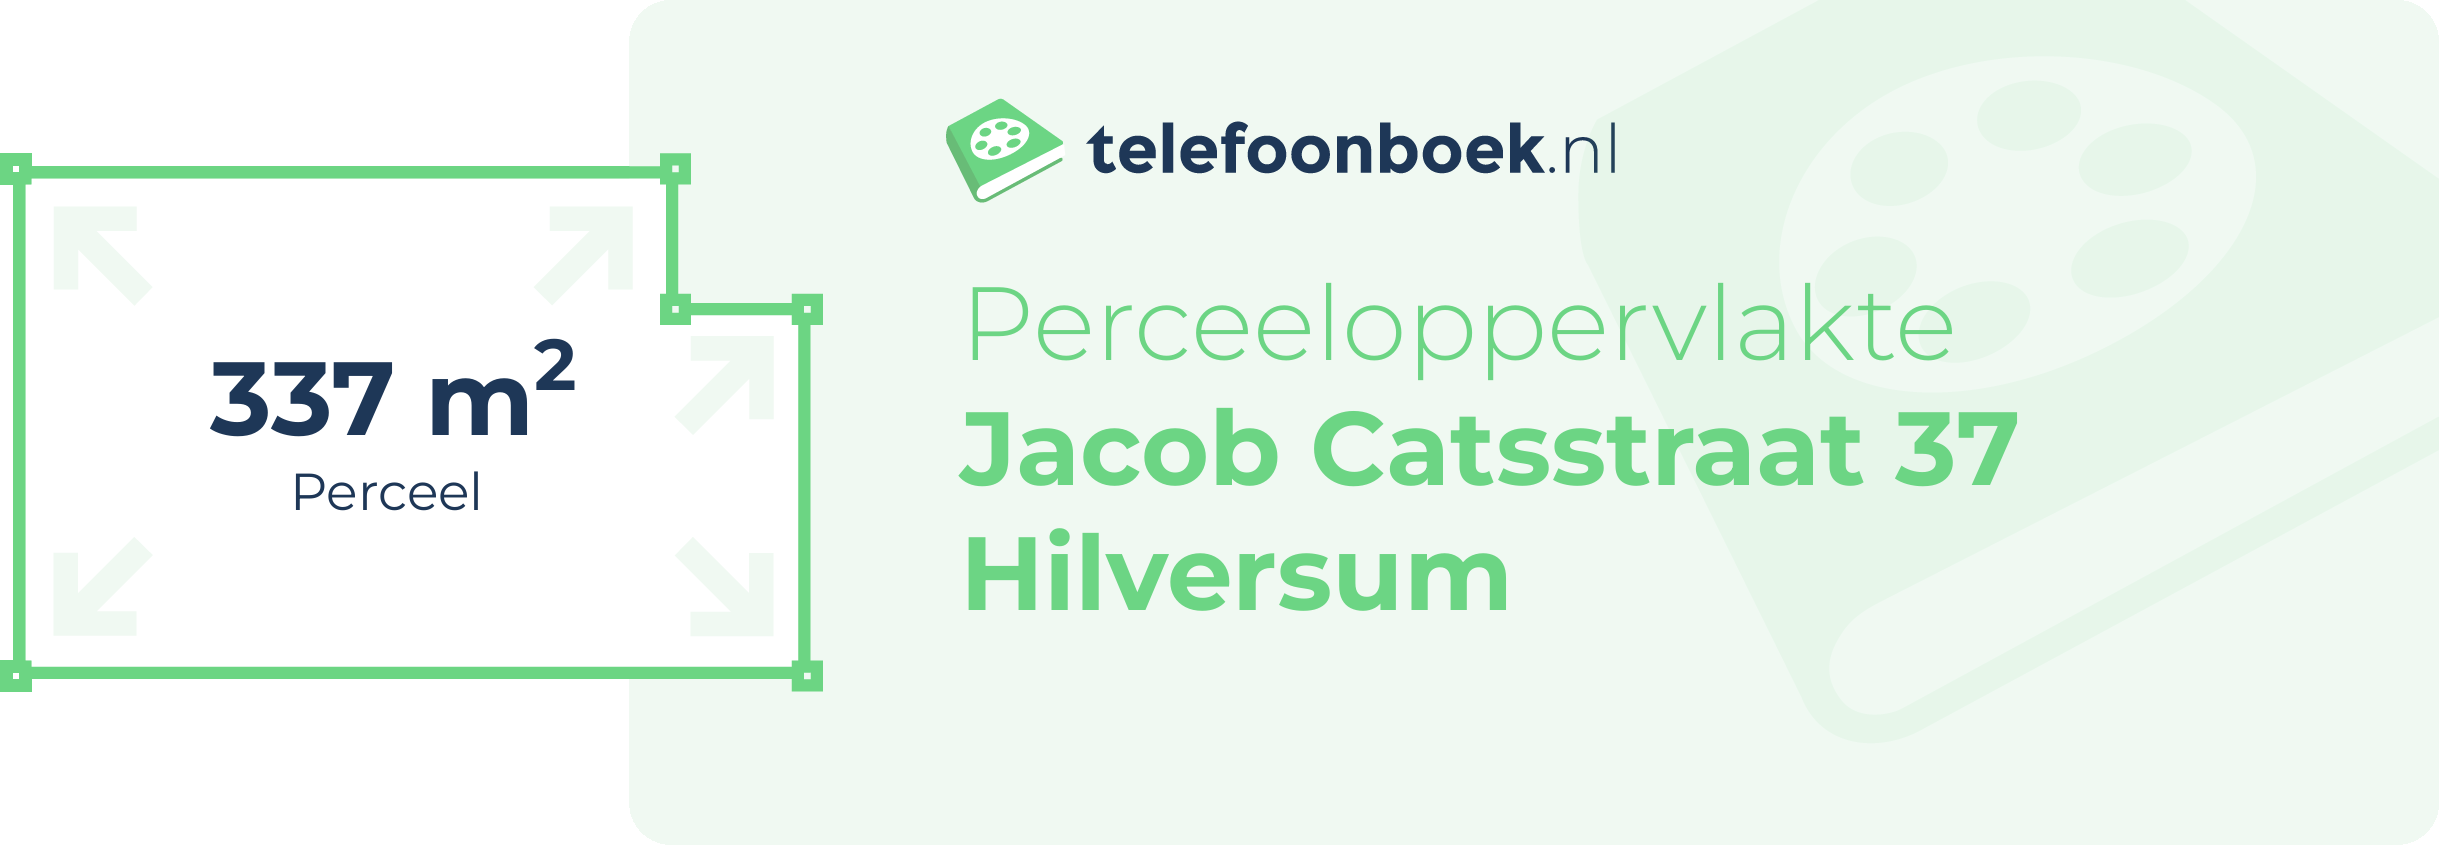 Perceeloppervlakte Jacob Catsstraat 37 Hilversum